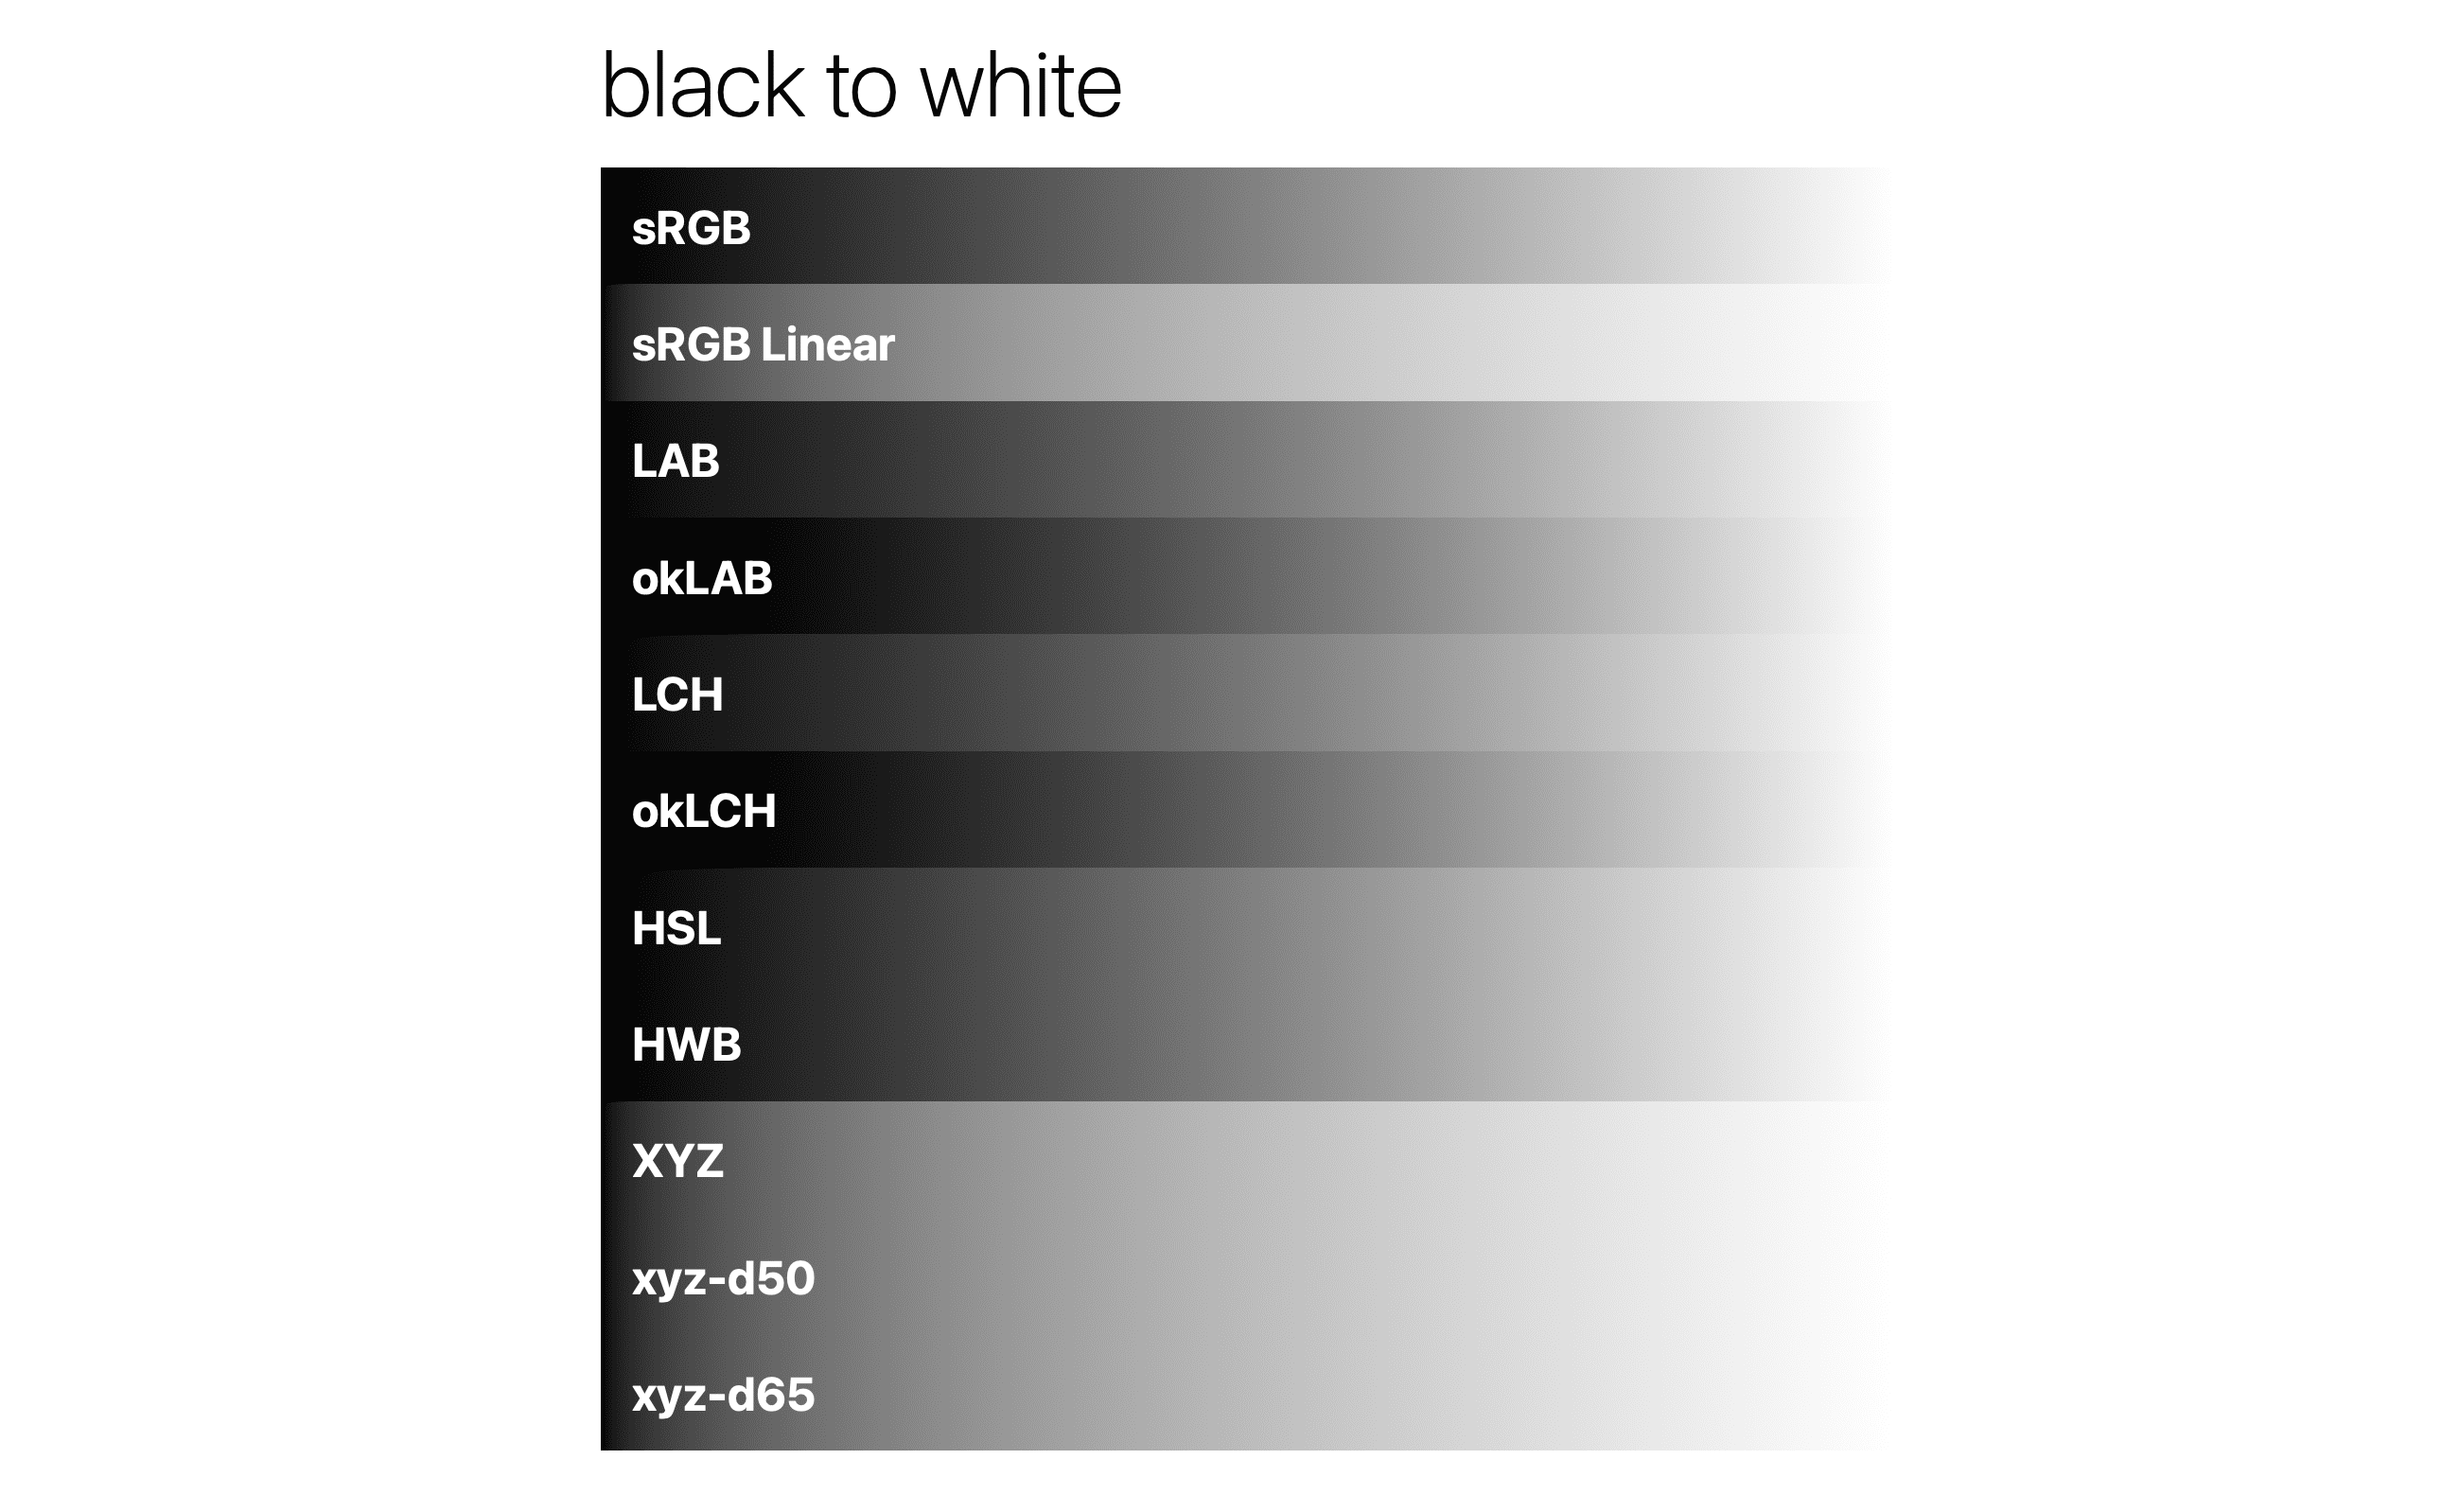 Gradien hitam ke putih dalam ruang warna yang berbeda.